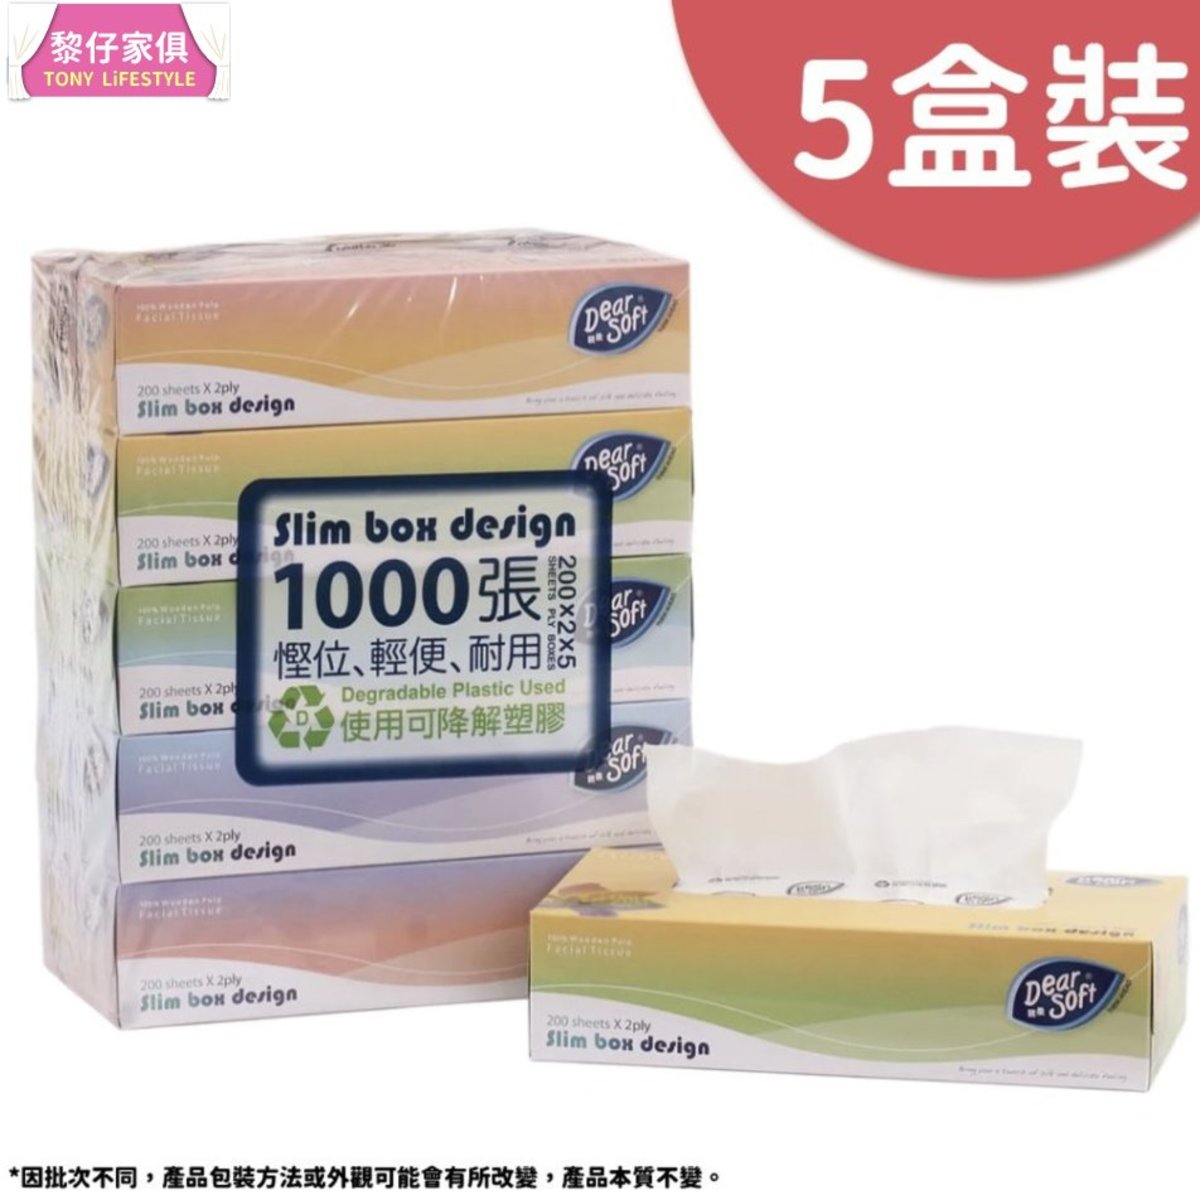 Dear Soft 5盒裝1000張 親柔壓縮盒裝面紙巾 0張x 5盒 彩色 可降解塑膠 環保 呵護肌膚 Hktvmall 香港最大網購平台